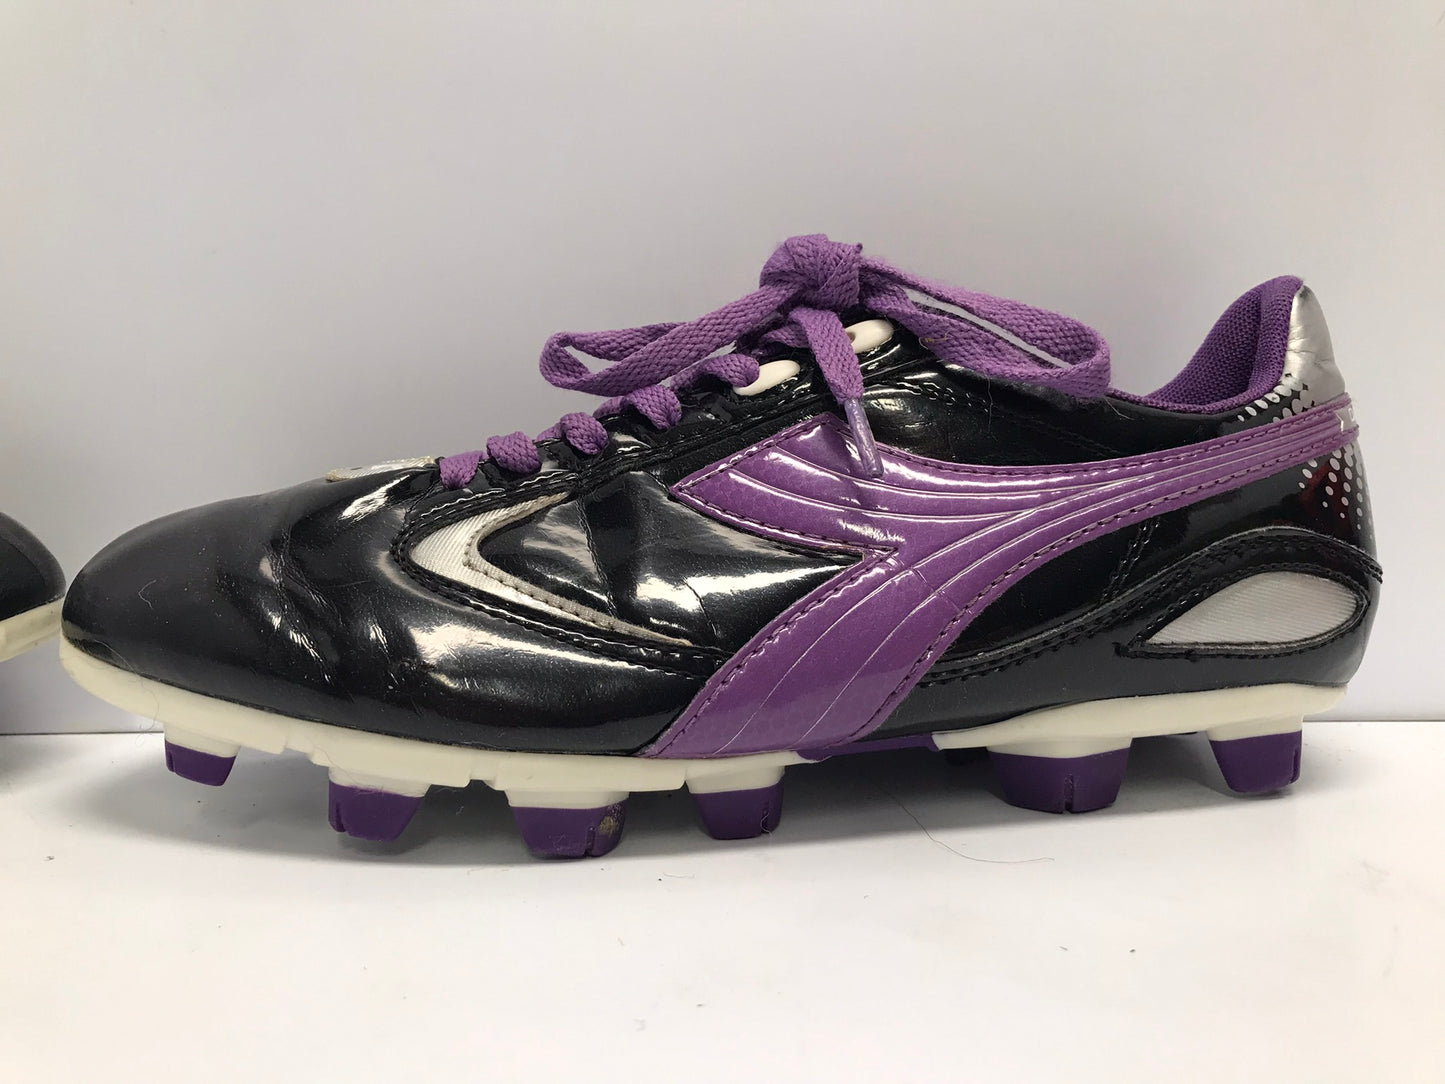 Soccer Shoes Cleats Ladies Size 9 Puma Diadora Black Purple Excellent